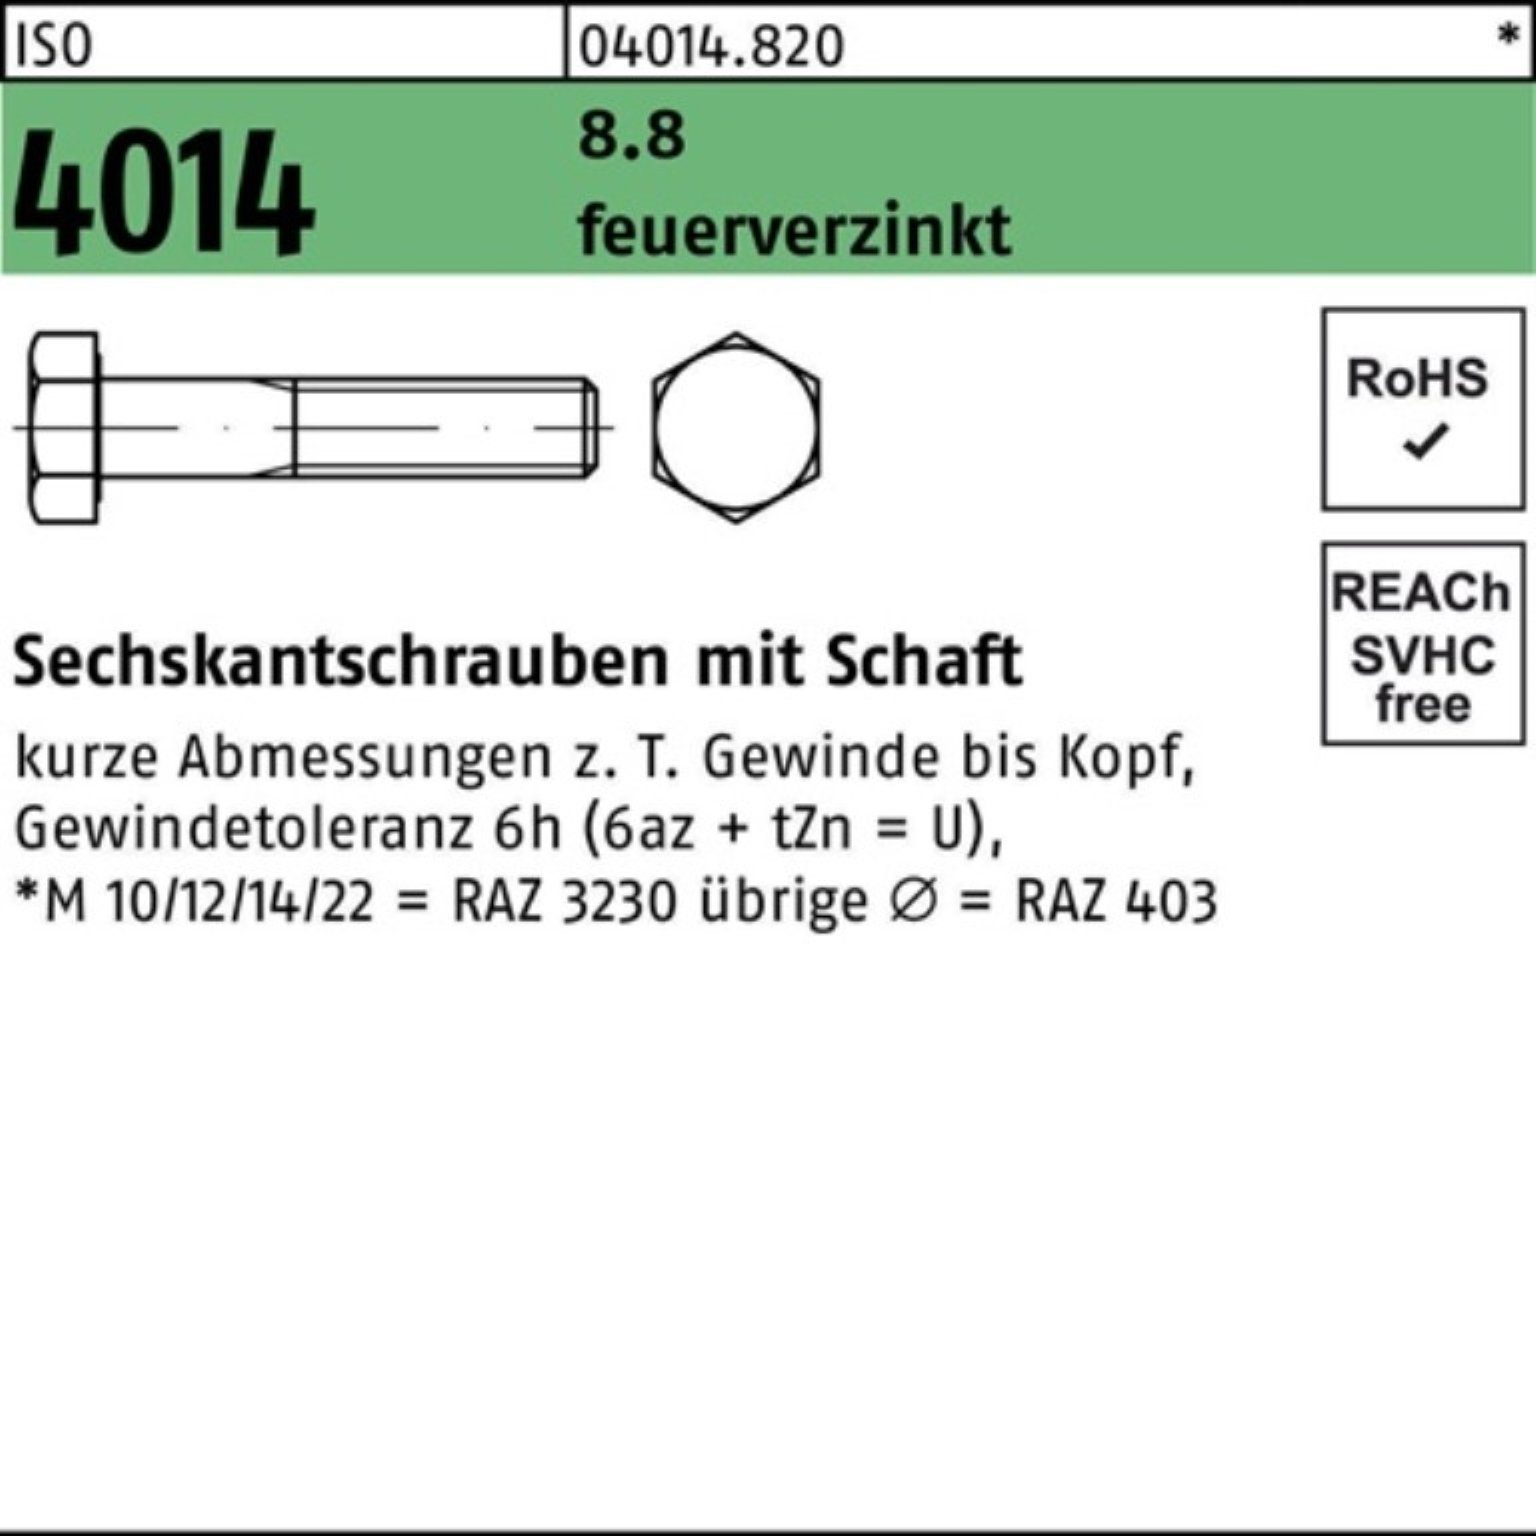 Schaft Pack 1 Sechskantschraube 4014 Bufab 8.8 190 feuerverz. ISO Sechskantschraube 100er M36x